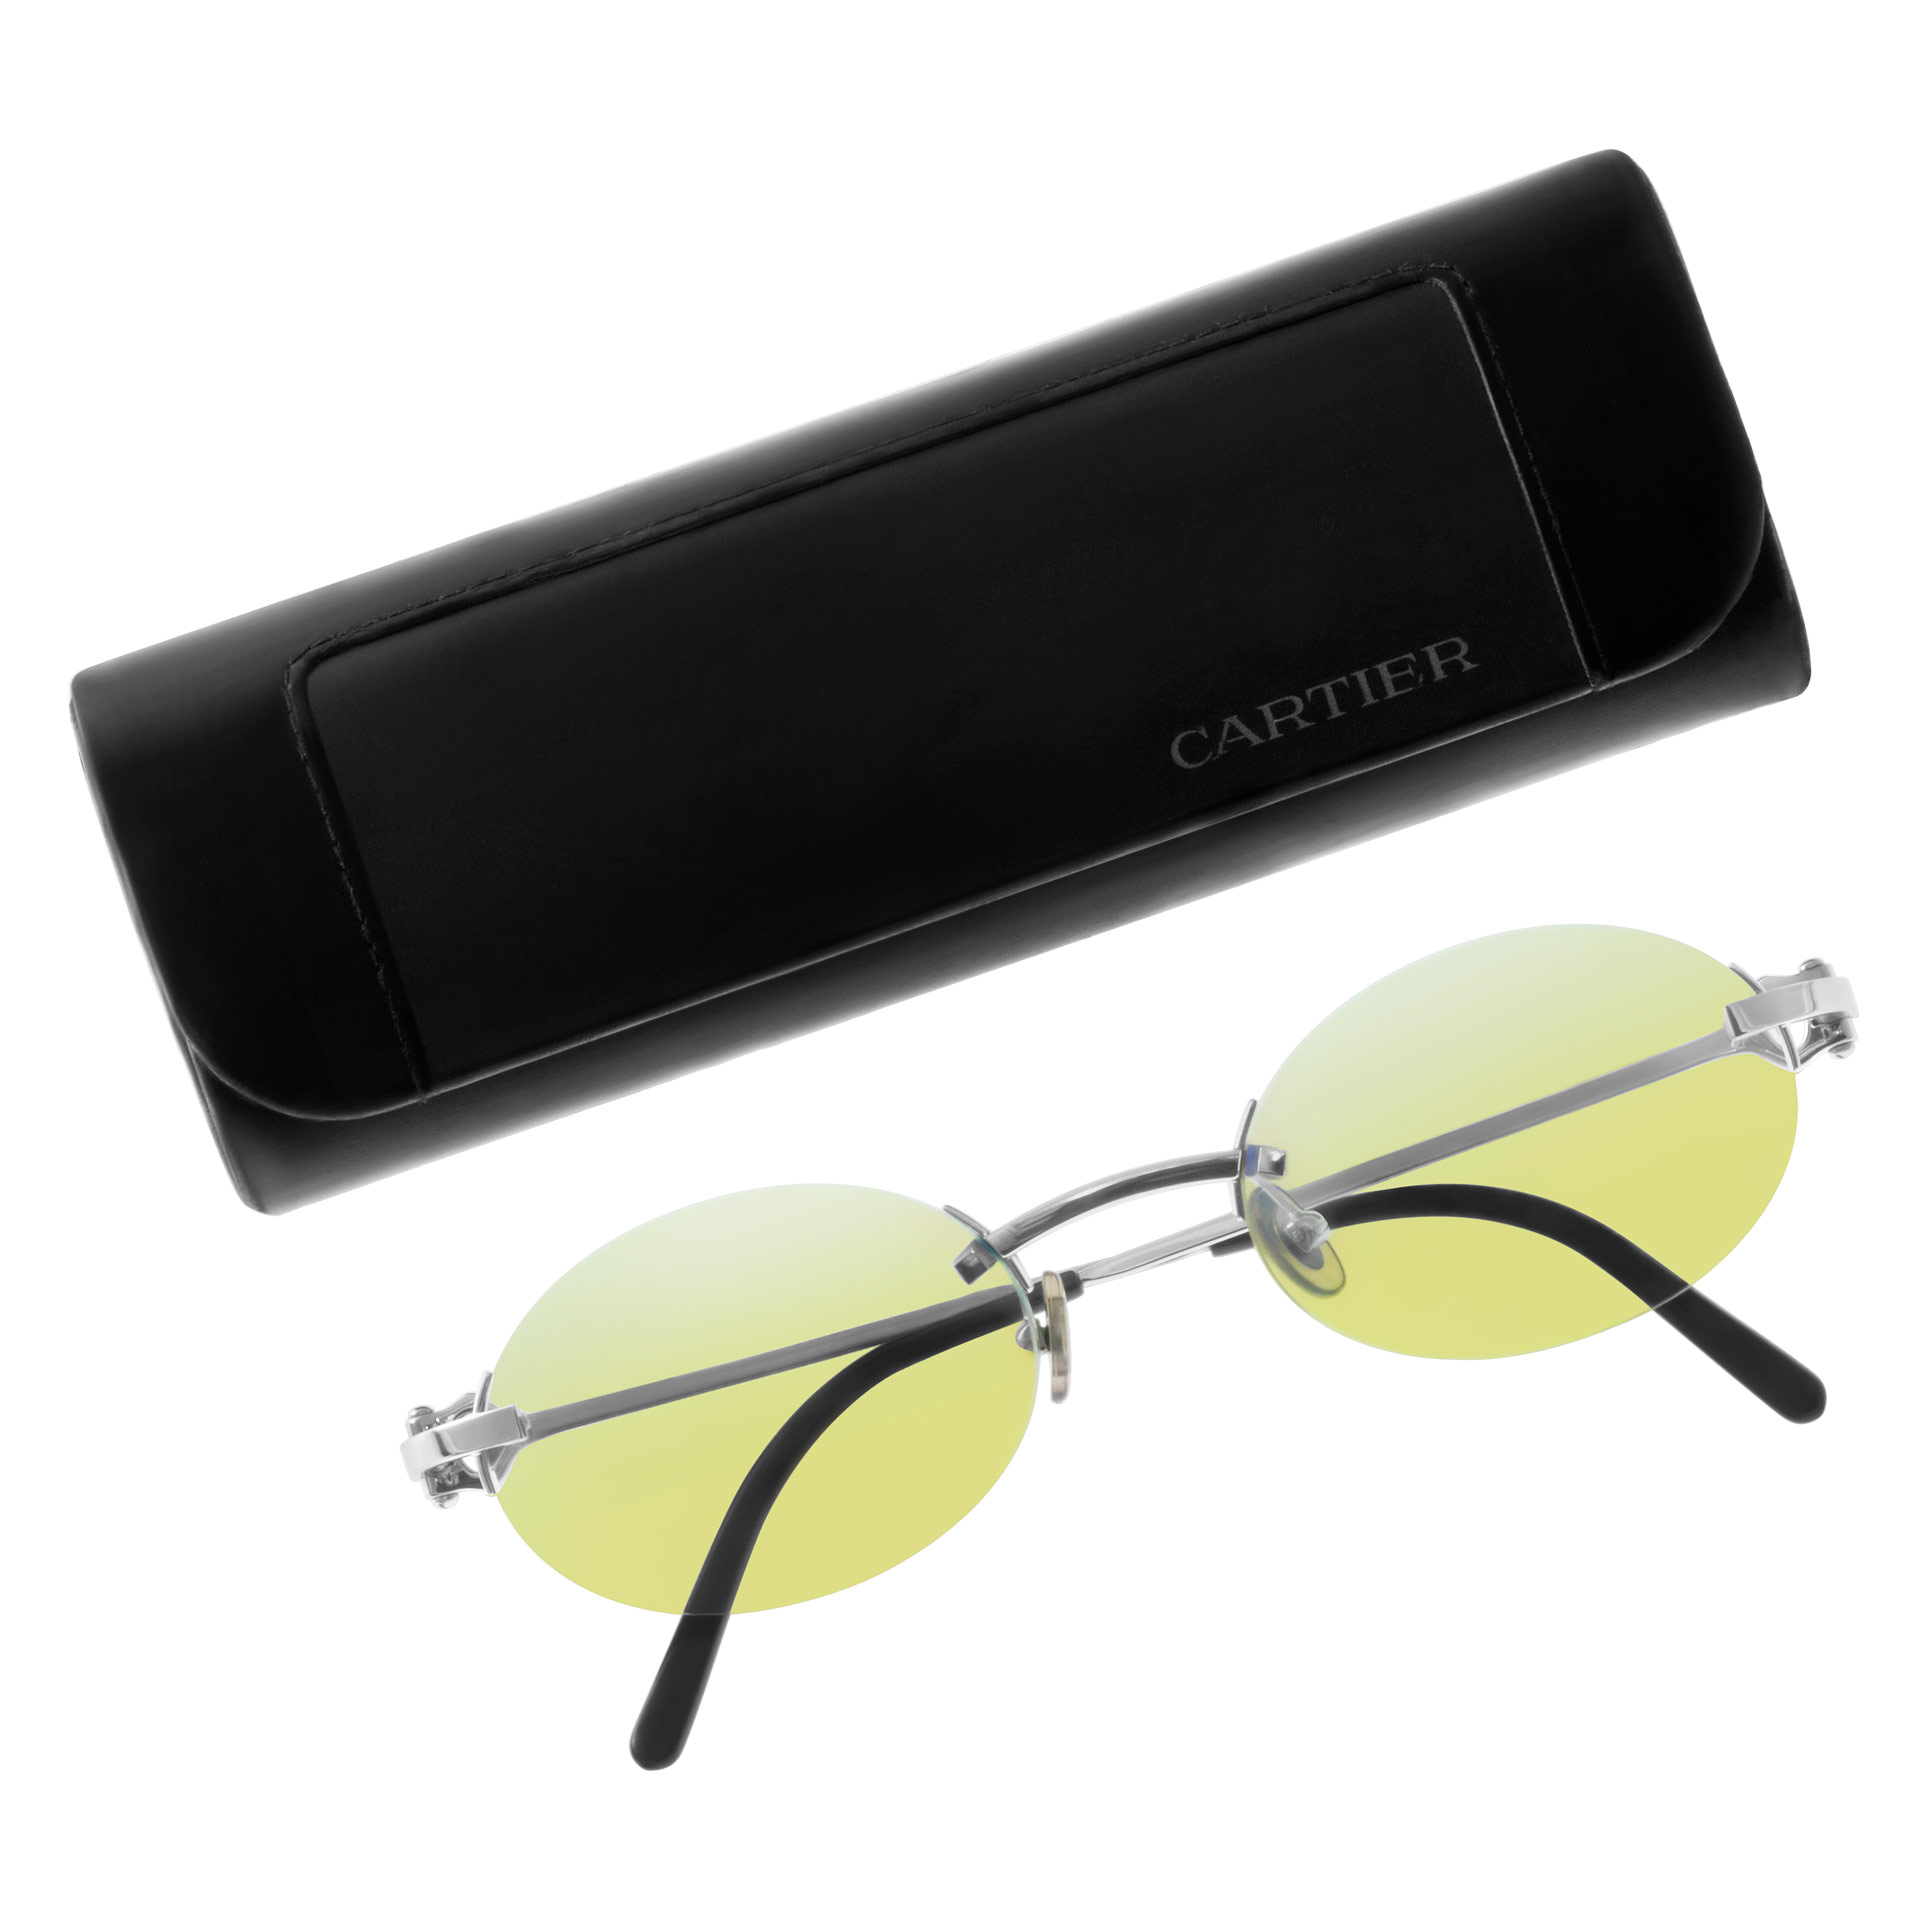 Cartier sunglasses steel frames